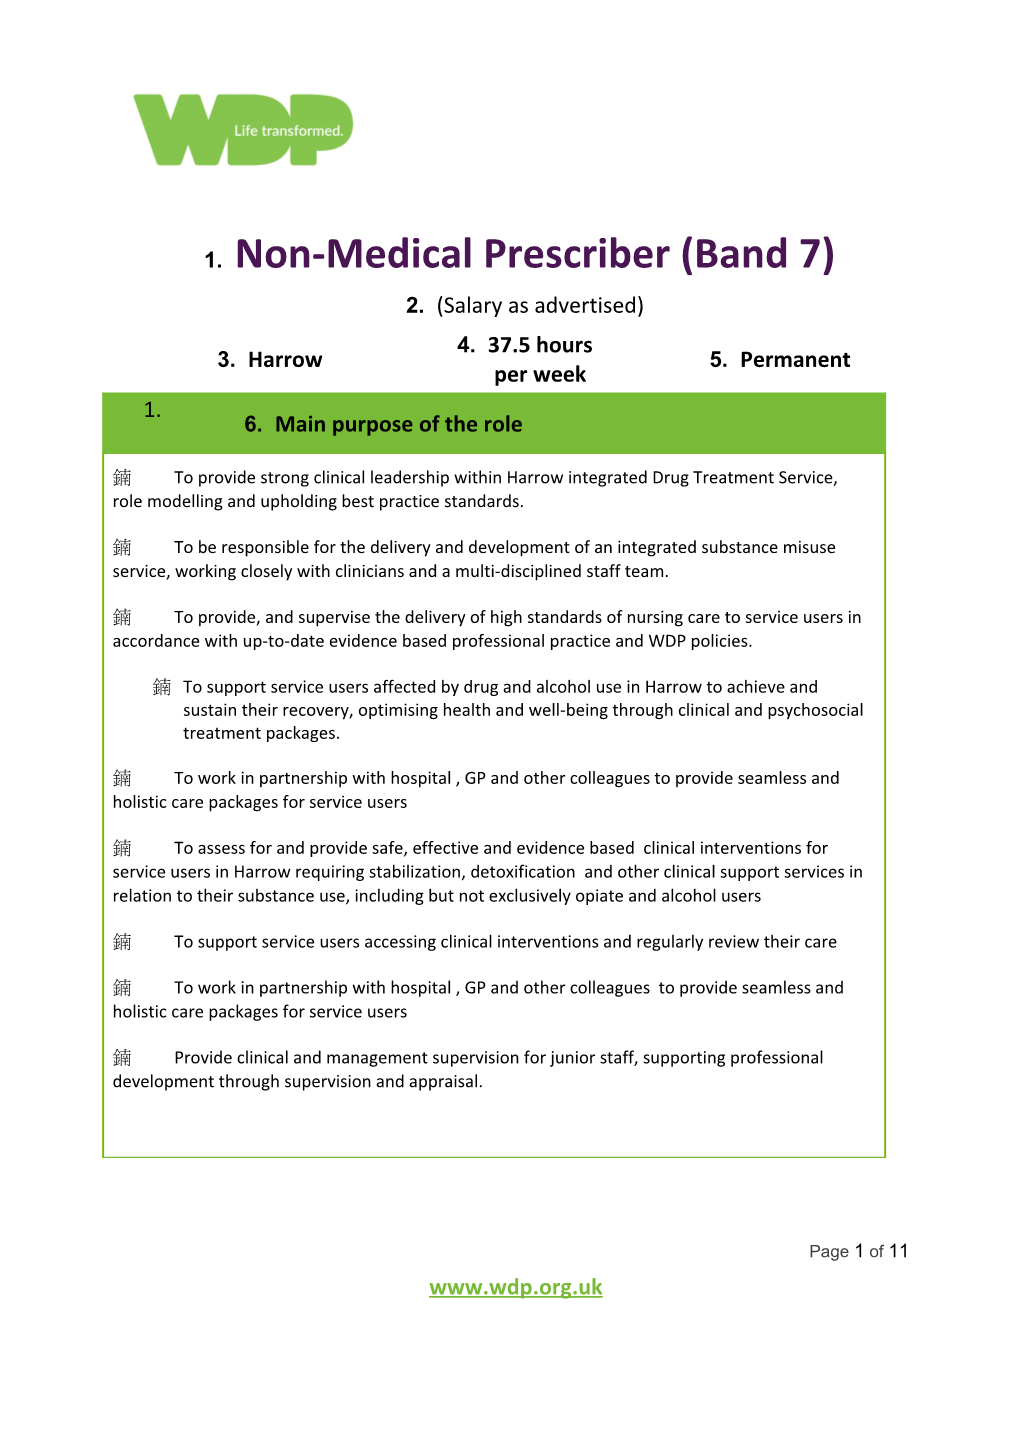 Non-Medical Prescriber (Band 7)